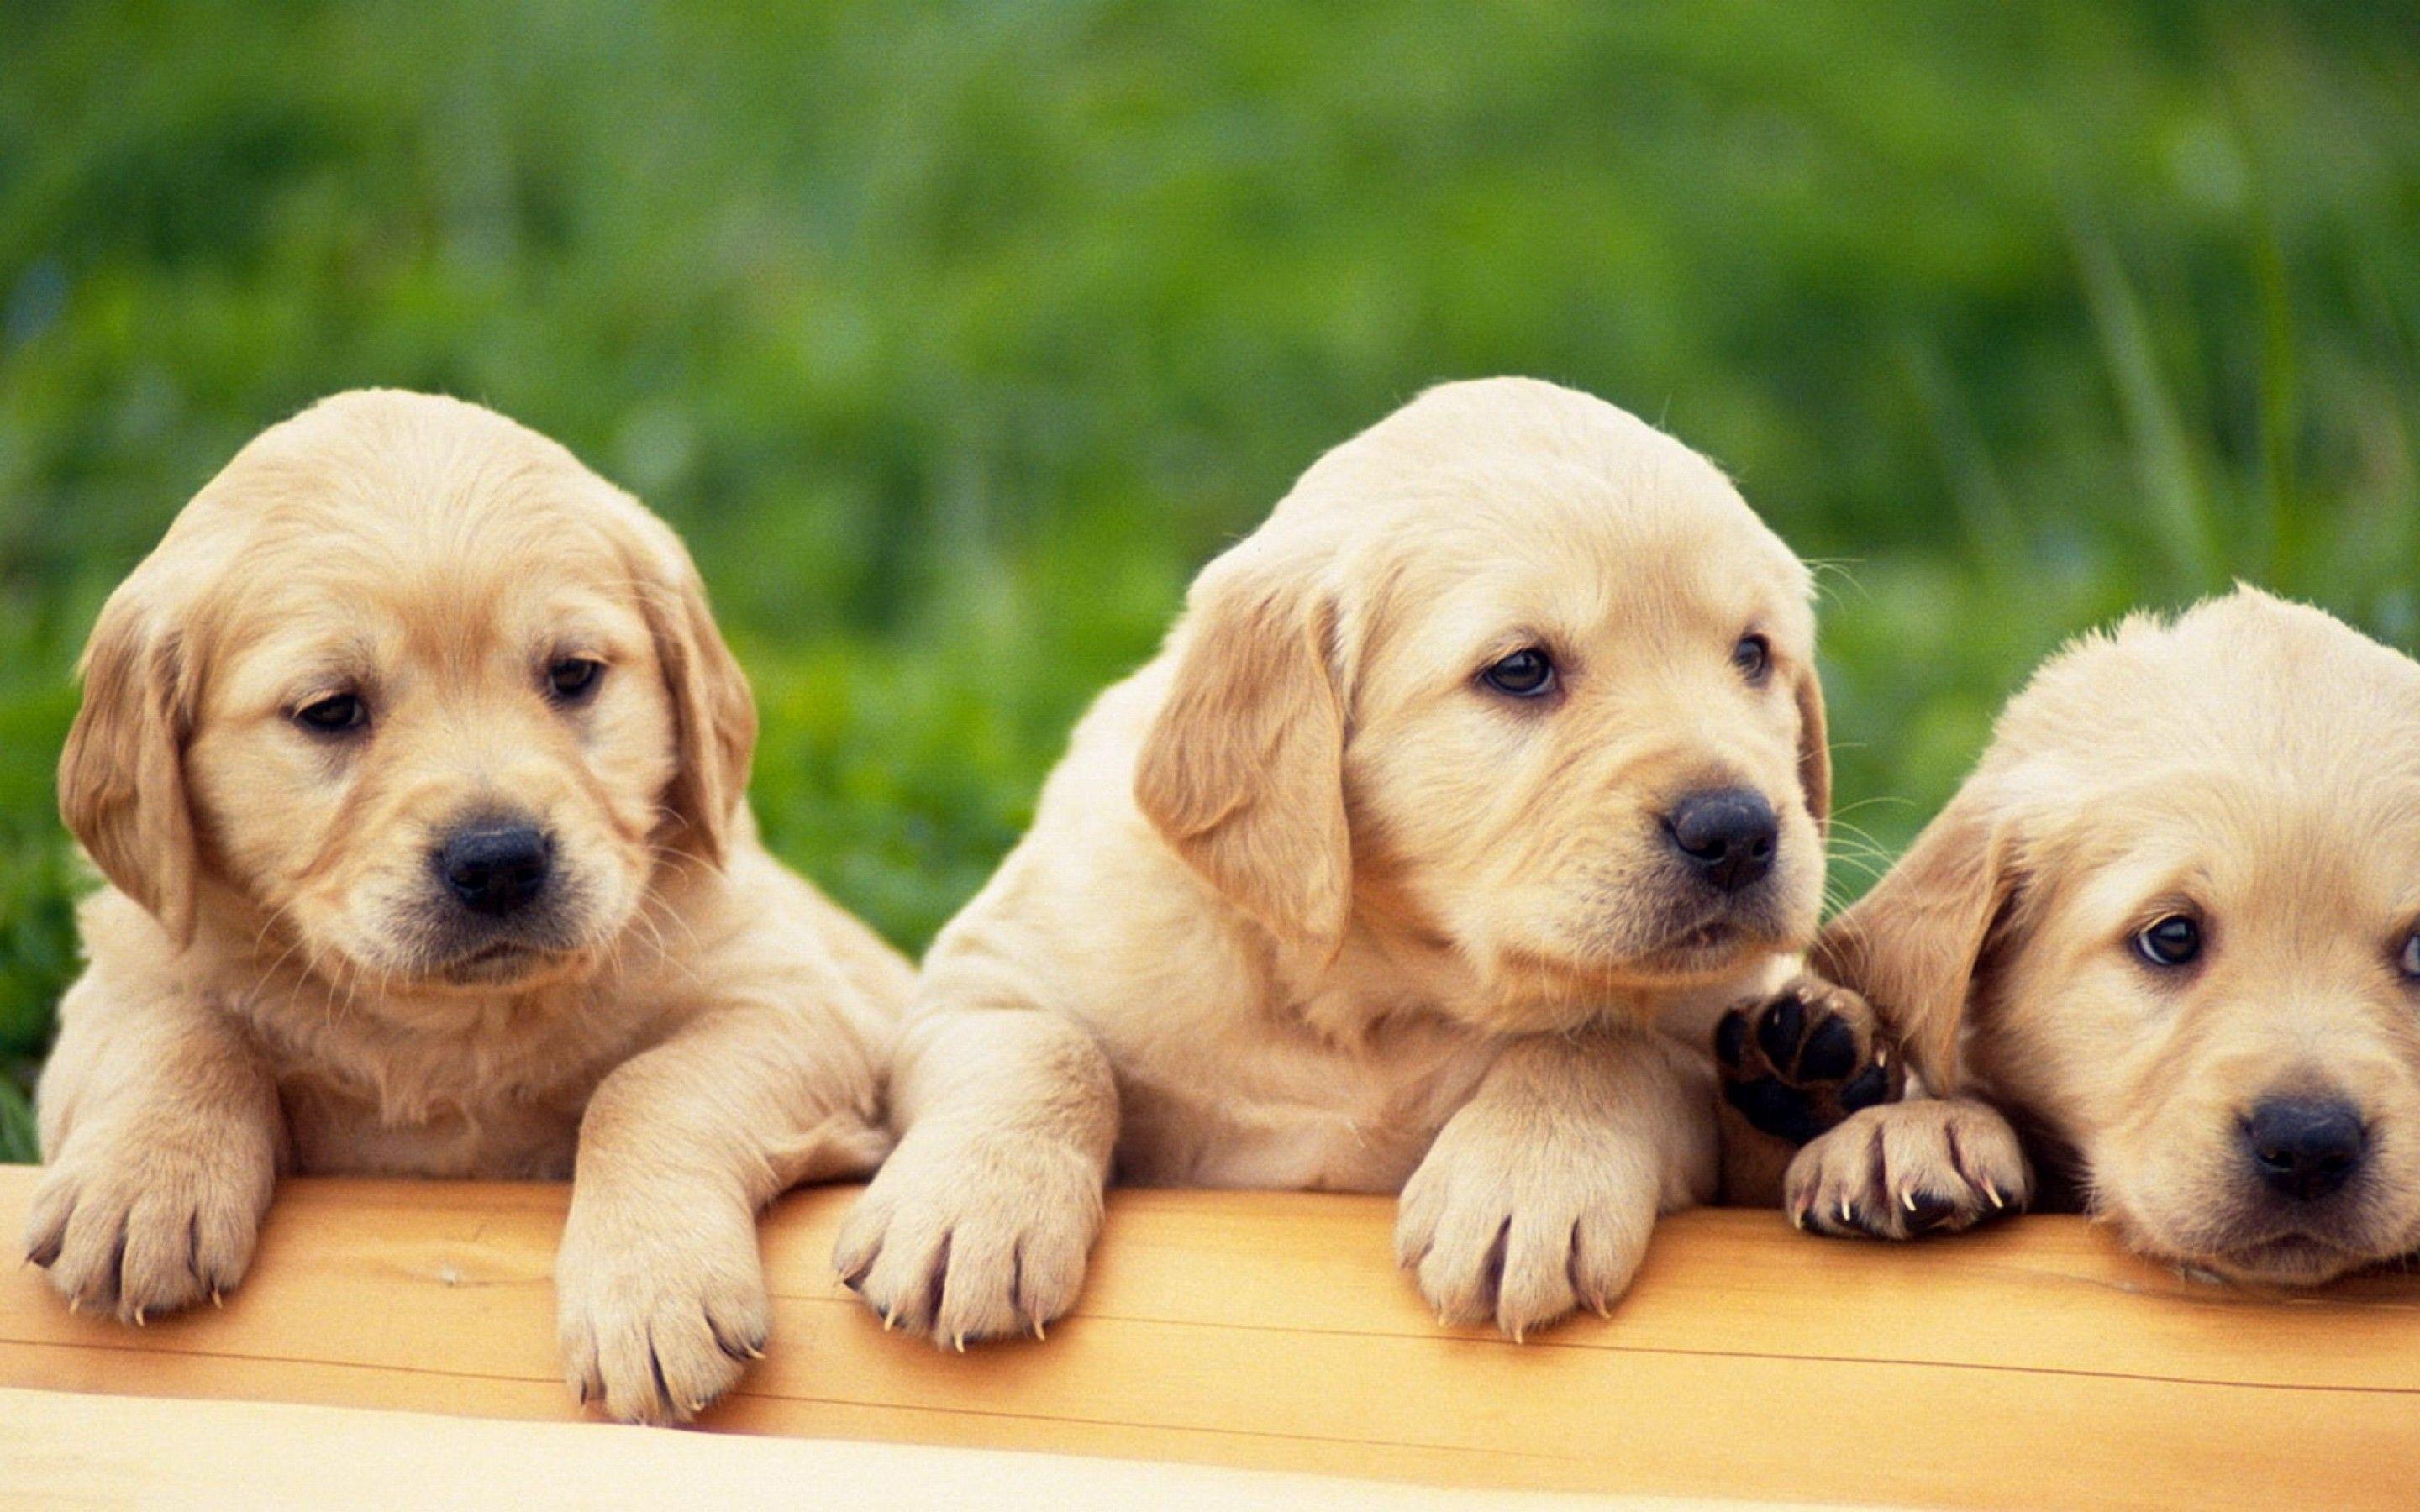 Cute Puppies On The Grass Wallpaper Full HD Wallpaper. High